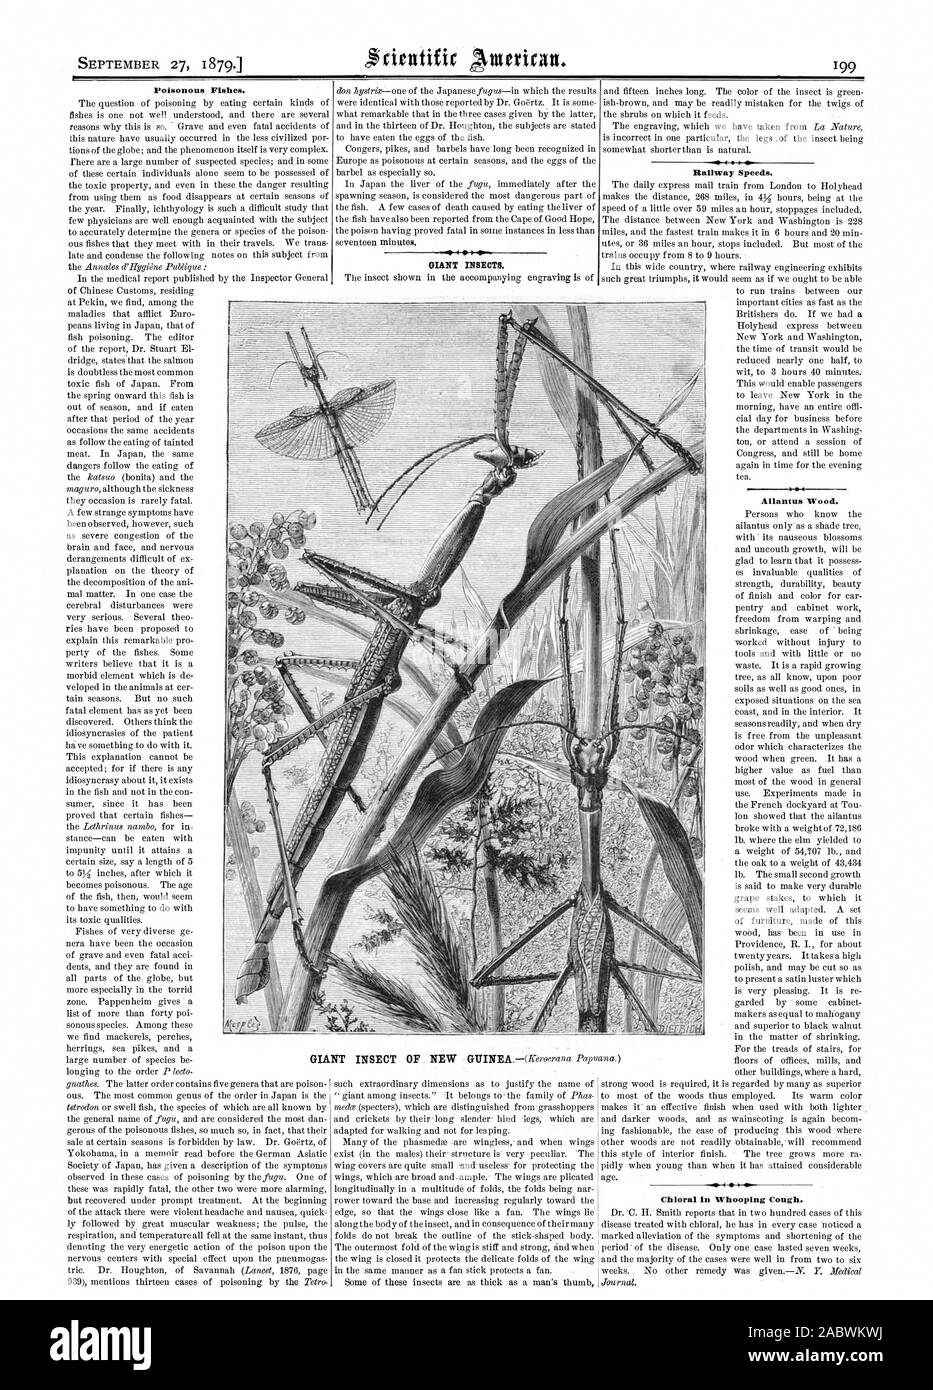 Poissons venimeux. Les insectes géants. Vitesse Ferroviaire. Allan tus le bois. Le chloral dans la coqueluche., Scientific American, 1879-09-27 Banque D'Images